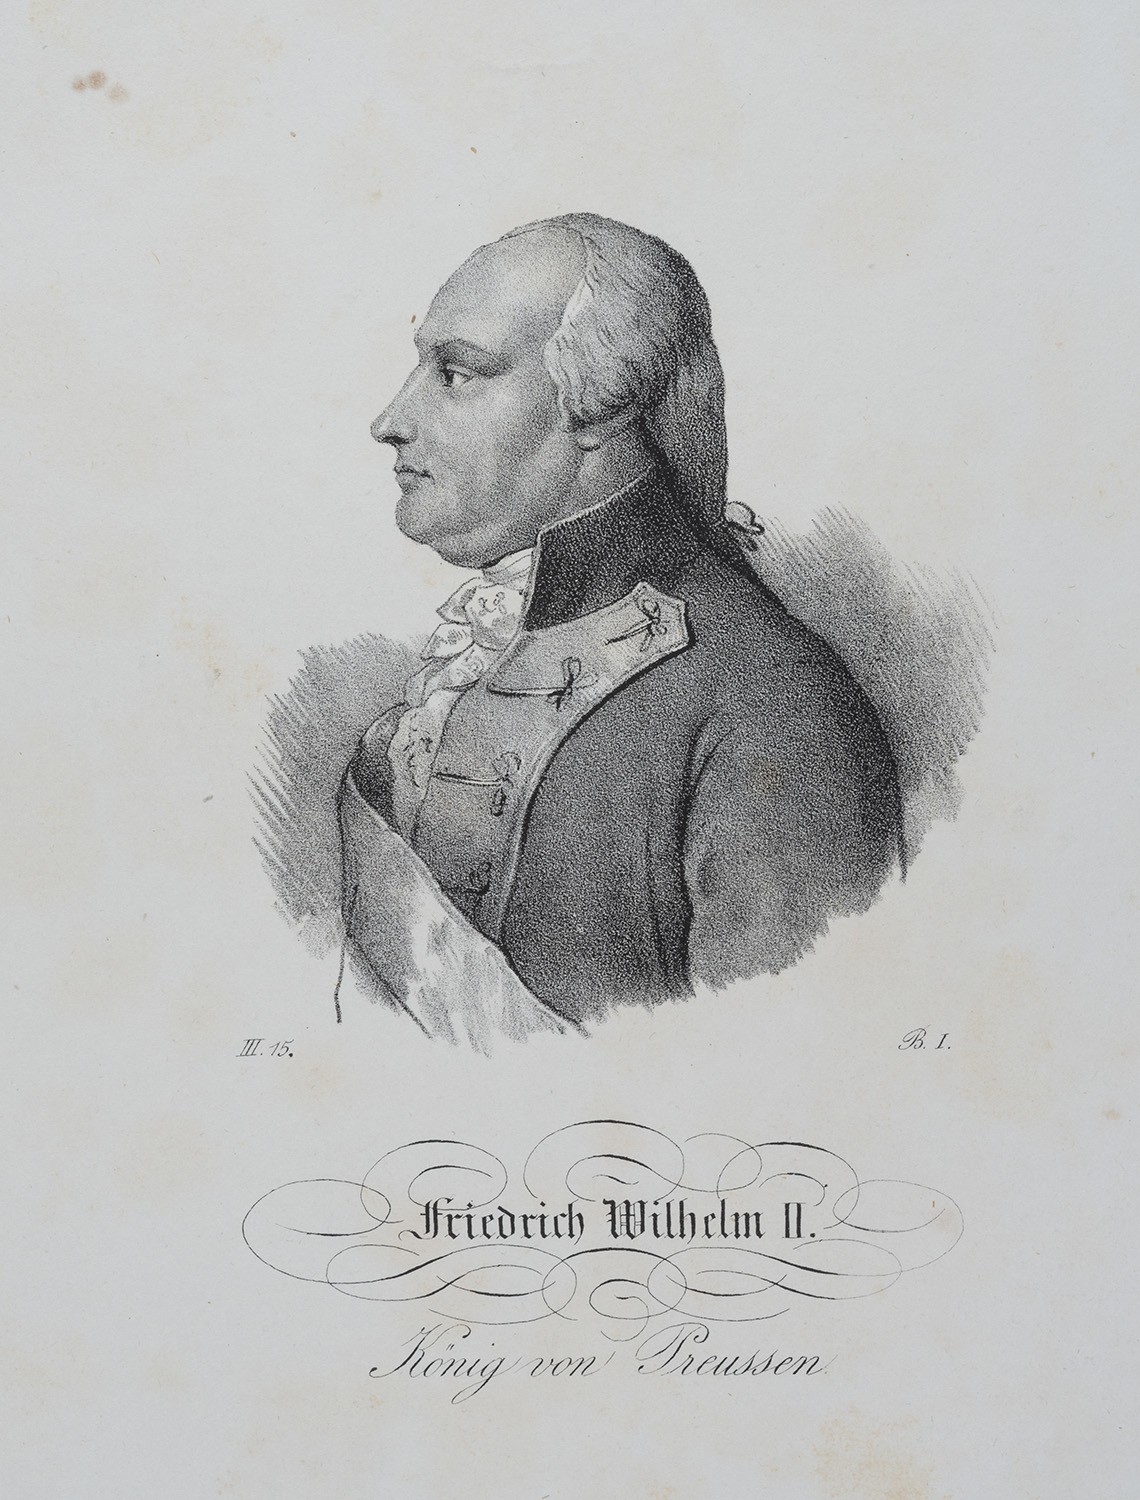 Friedrich Wilhelm II., König von Preußen (1744-1797, reg. 1786-1797) (Landesgeschichtliche Vereinigung für die Mark Brandenburg e.V., Archiv CC BY)